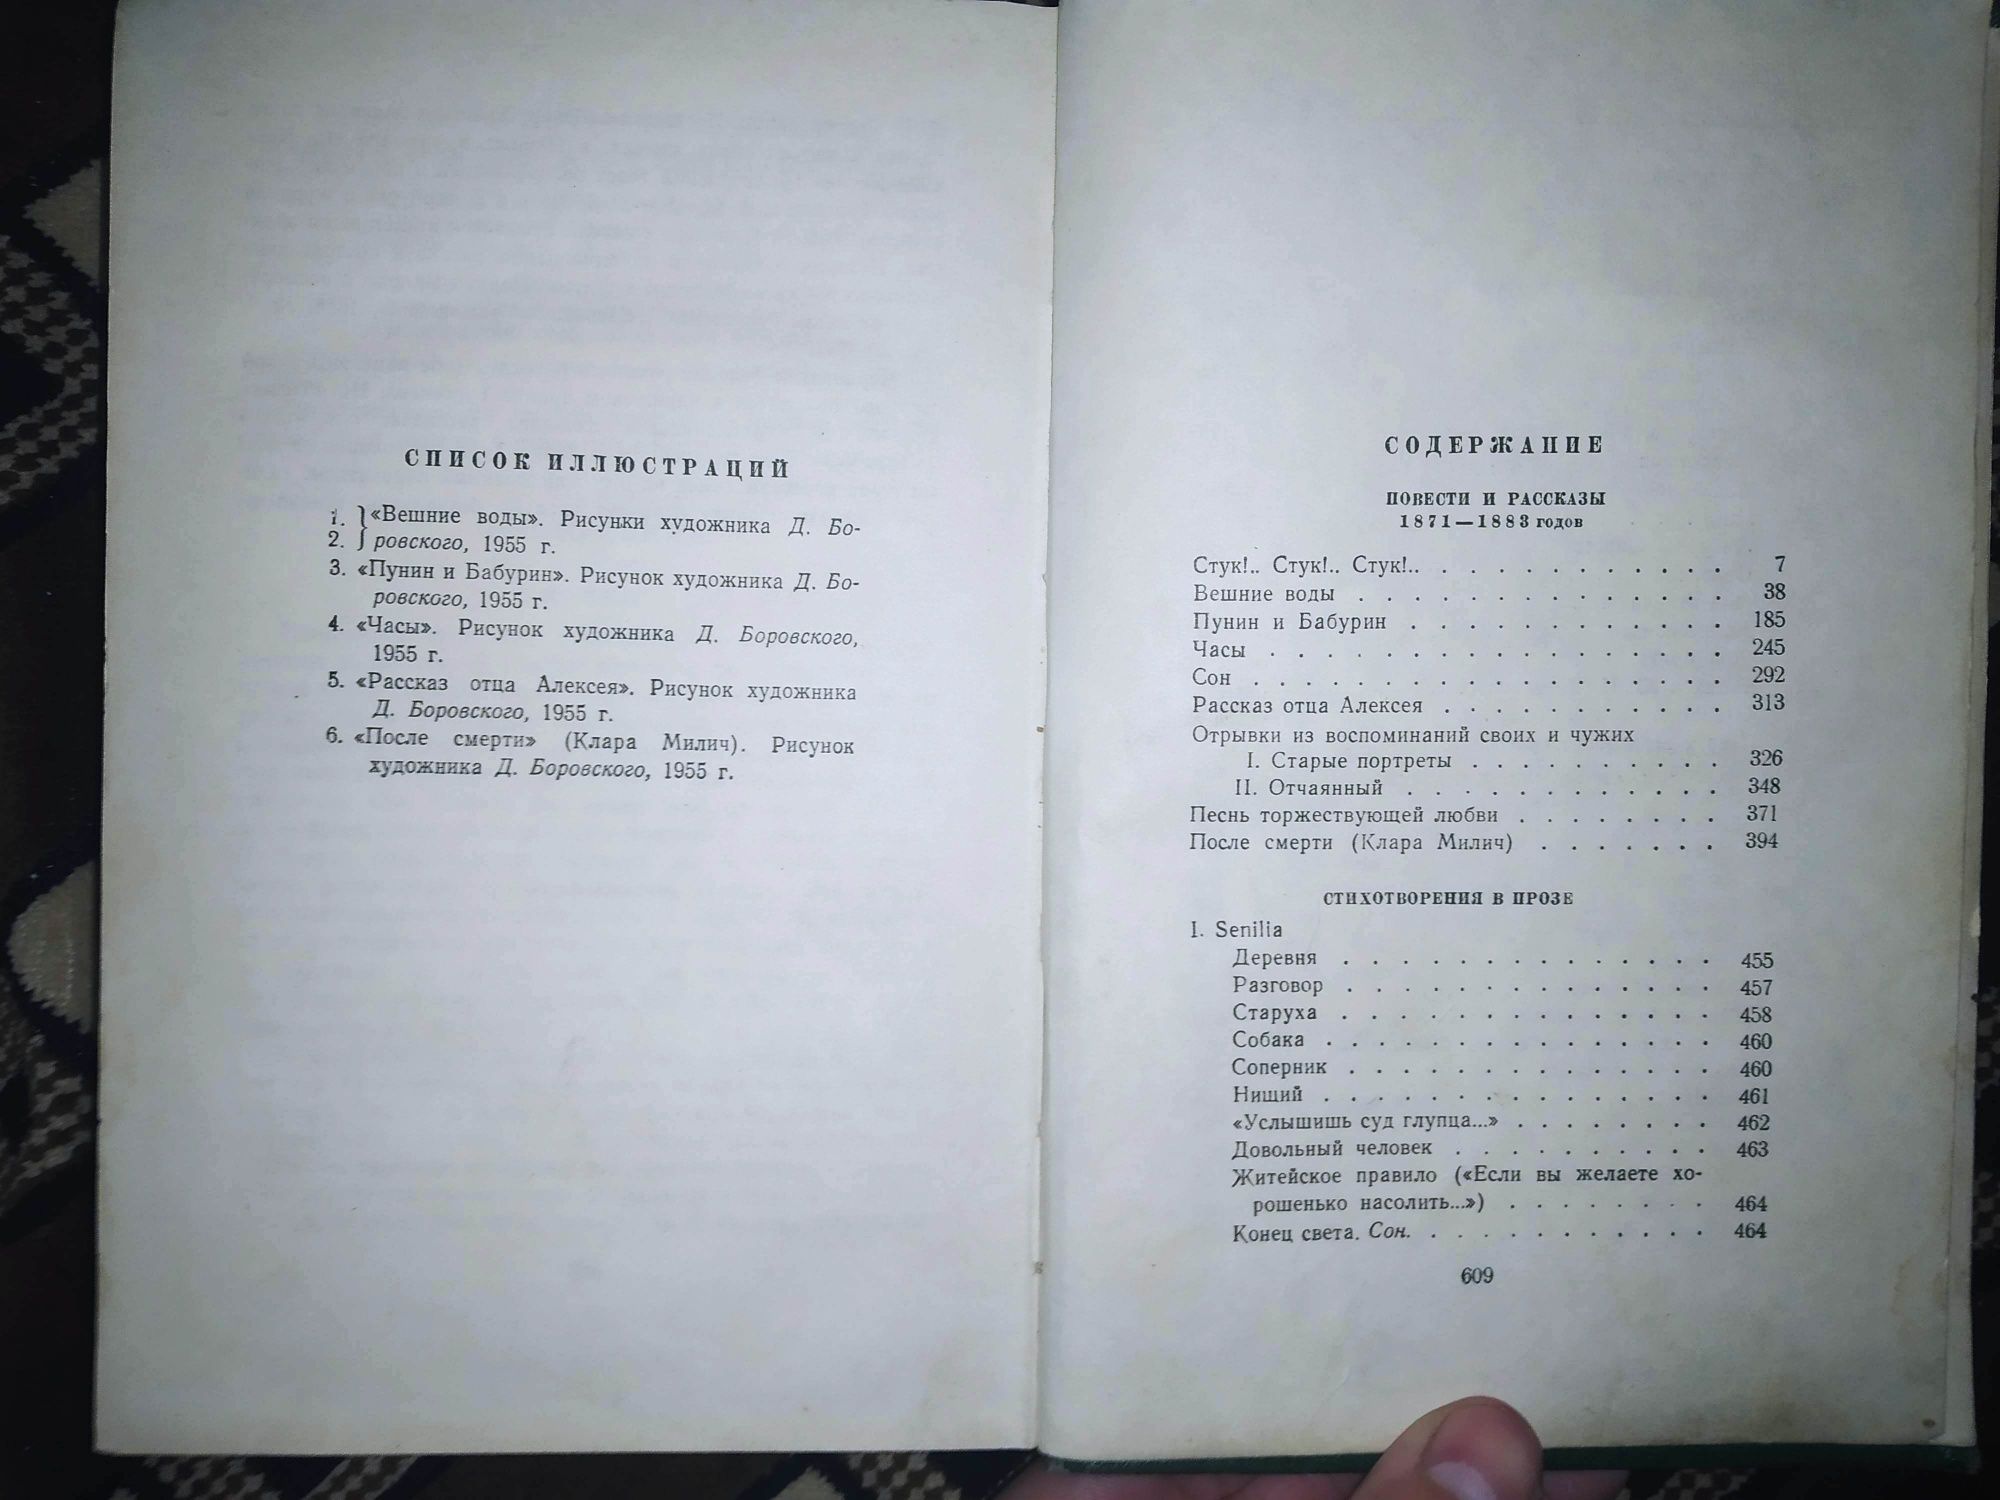 И. С. Тургенев в 12 томах, 1956 г

Состояние: Нормальное
Год: 1956
Тир